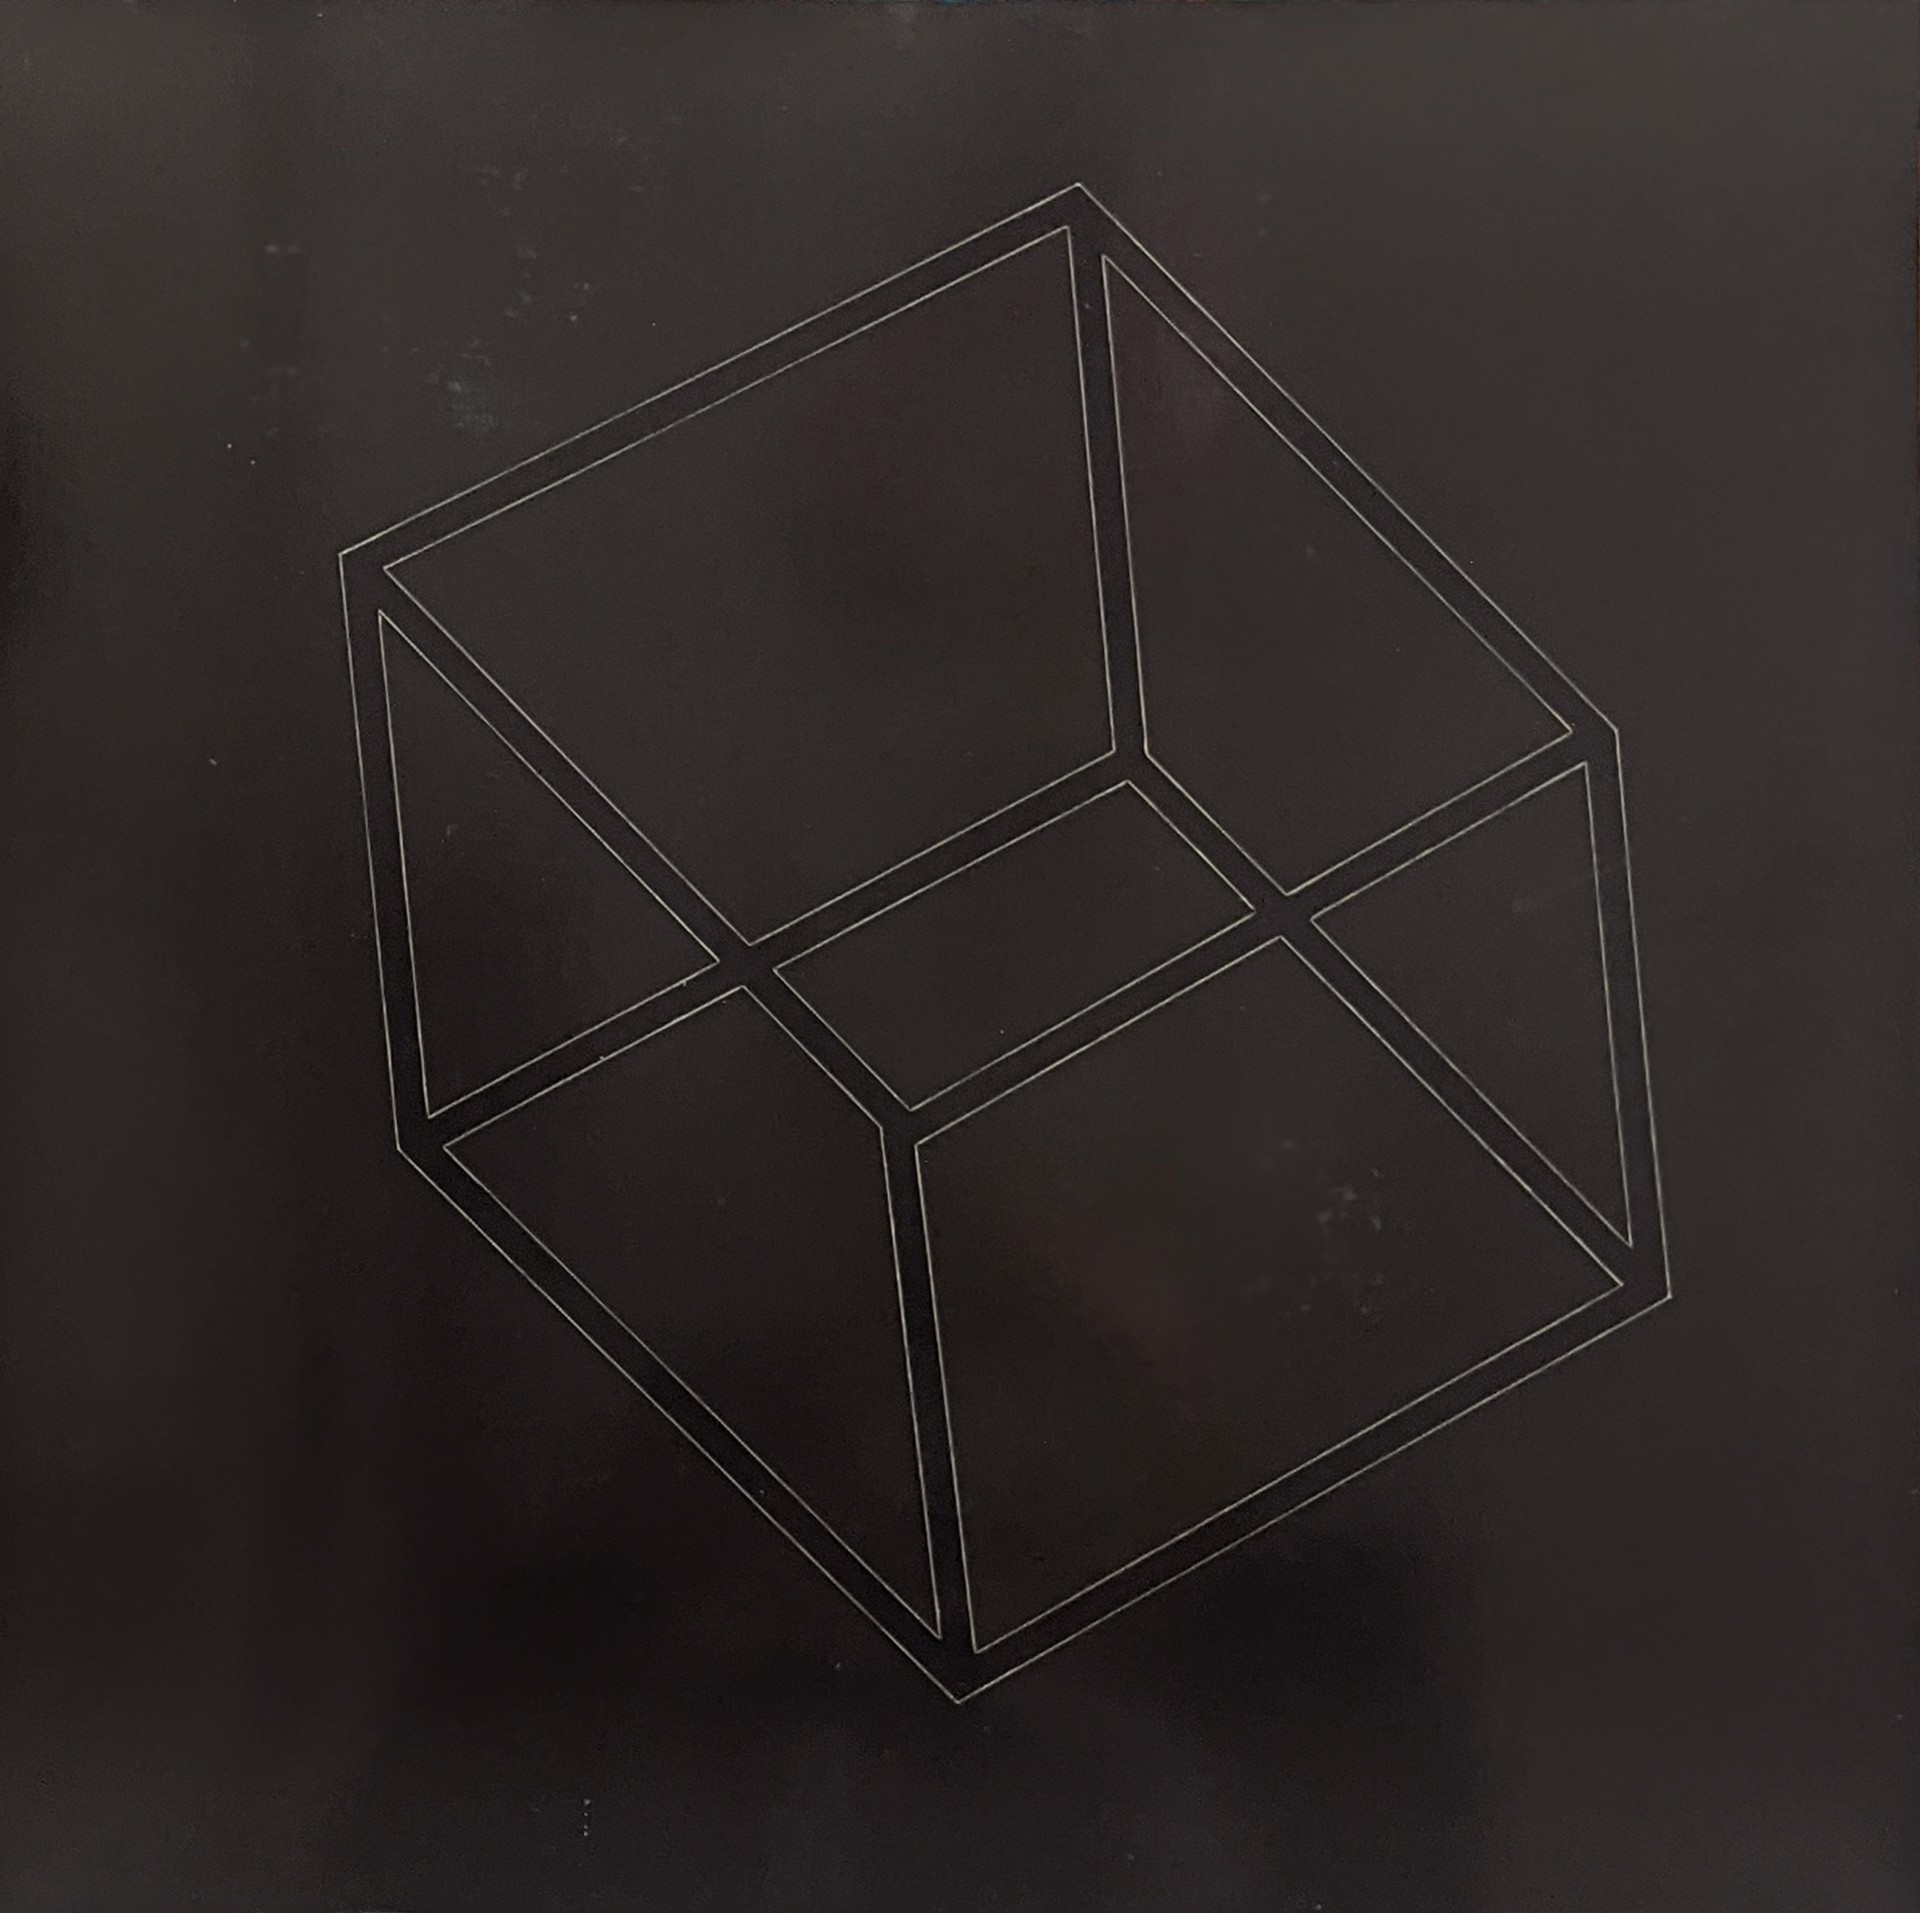 Hexahedron by Garland Fielder